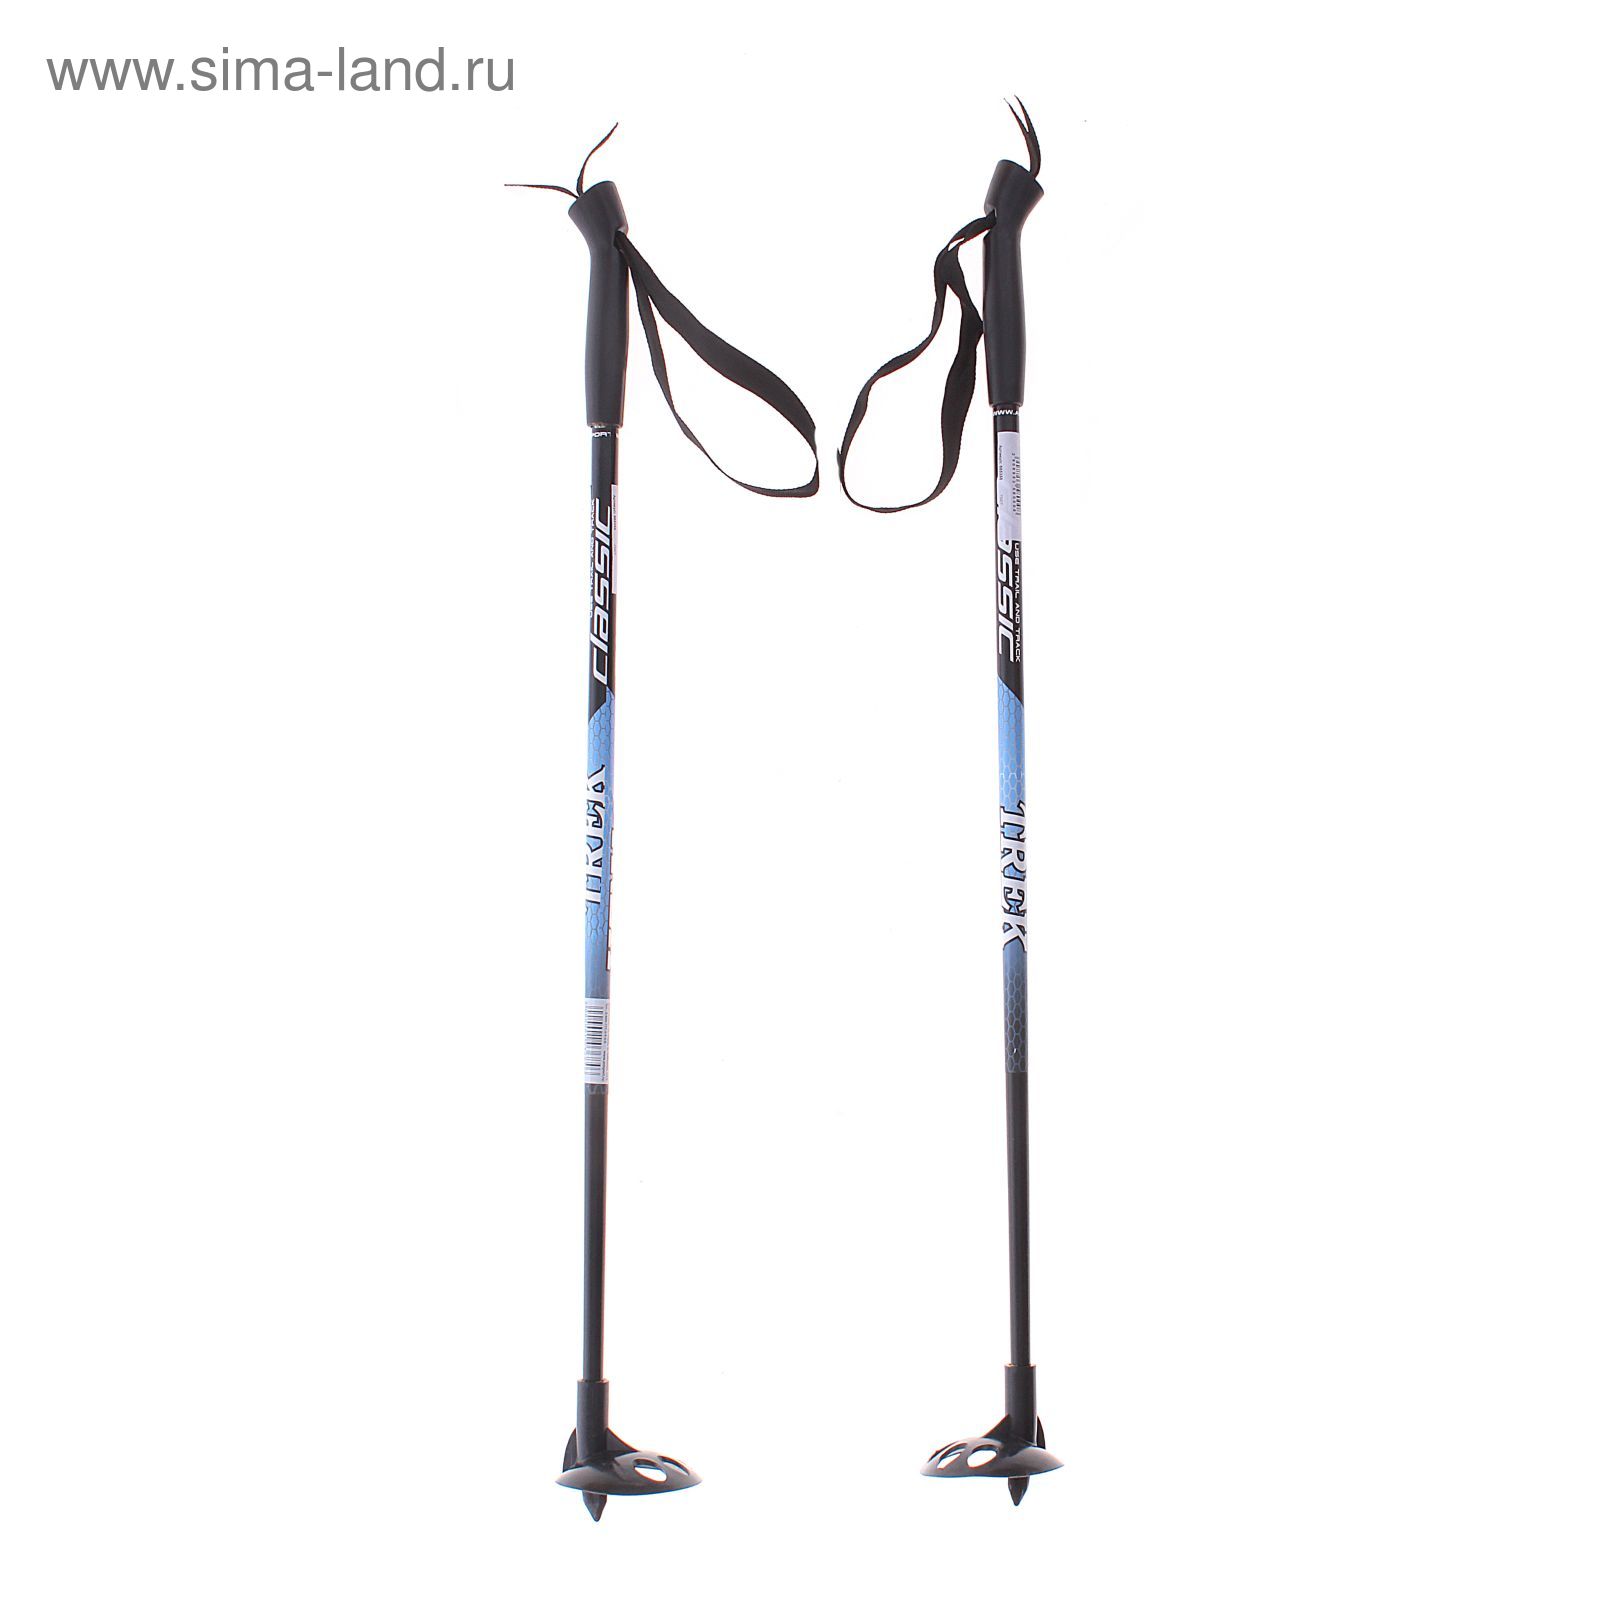 Палки лыжные стеклопластиковые TREK Classic (65 см), цвета микс